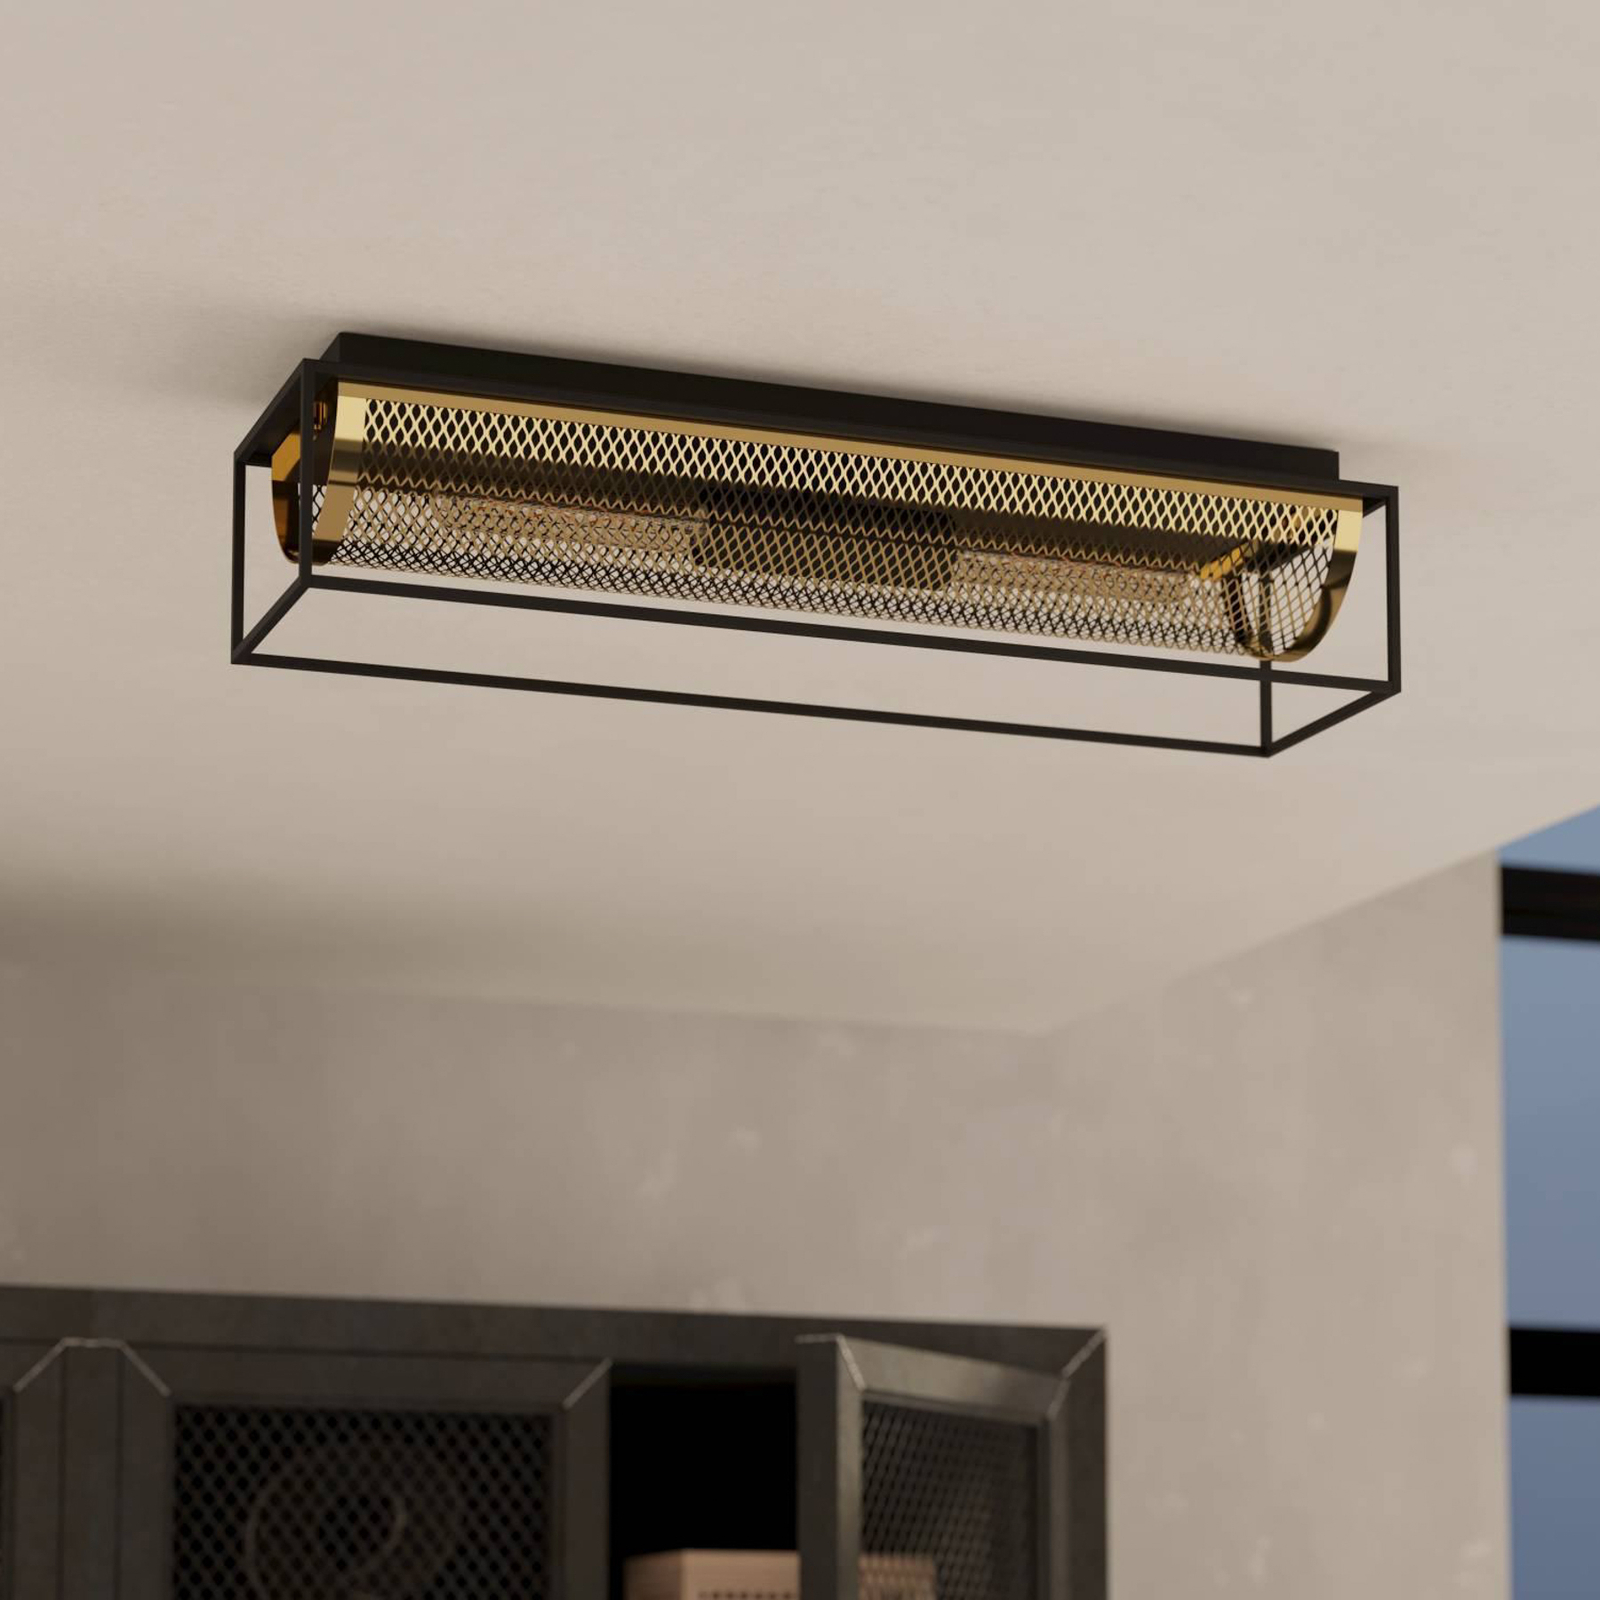 Nohales ceiling light, length 64 cm, black/brass, 2-bulb.